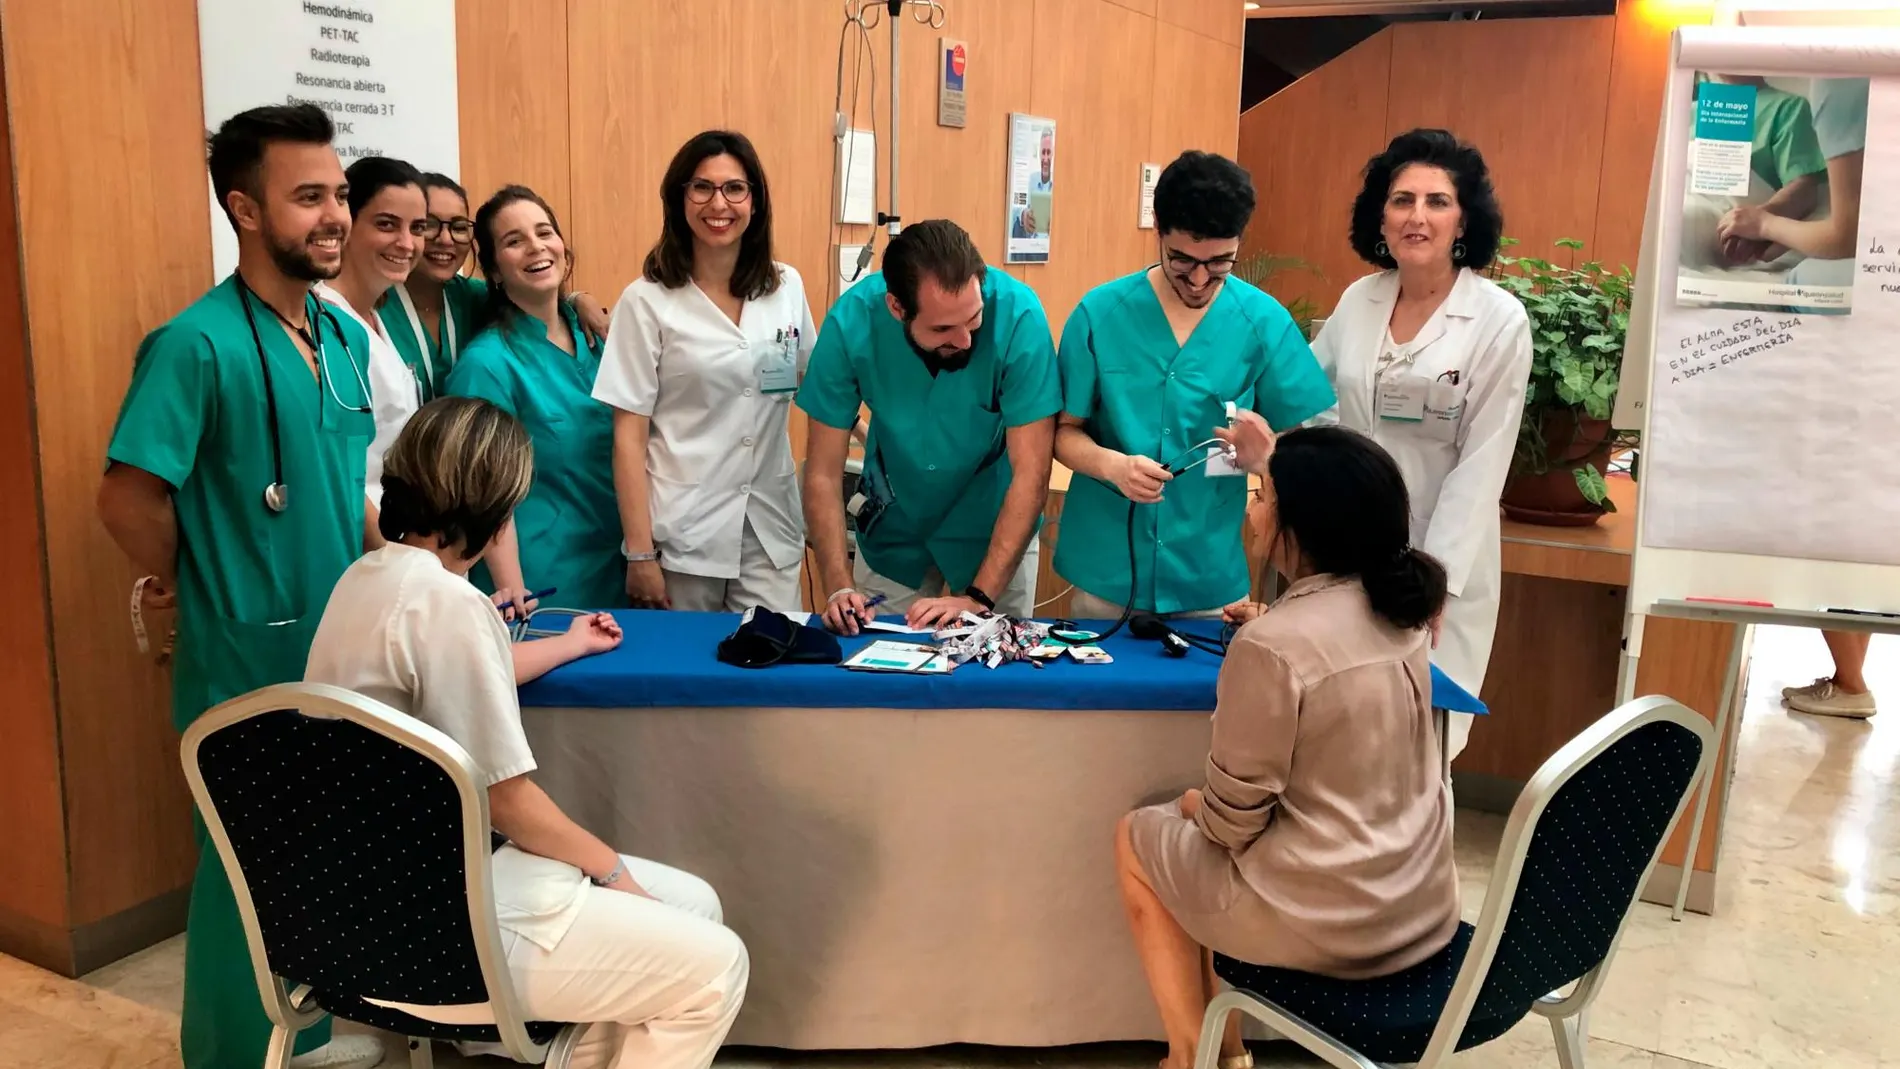 En el Hospital Quirónsalud Infanta Luisa, en Sevilla, se informó a los usuarios del trabajo diario que lleva a cabo la enfermería en los hospitales y se realizaron actividades como la toma de tensión y frecuencia cardiaca. Además se entregaron obsequios / Foto: La Razón